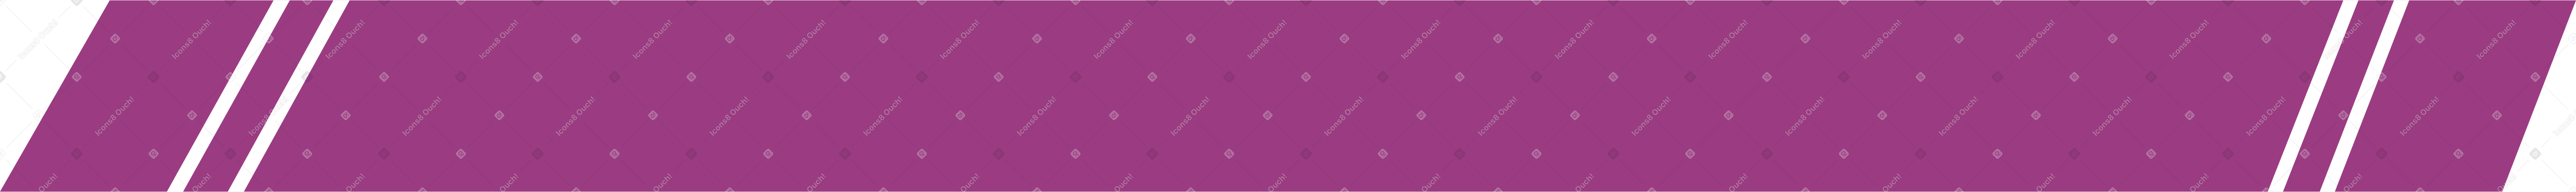 burgundy carpet Illustration in PNG, SVG